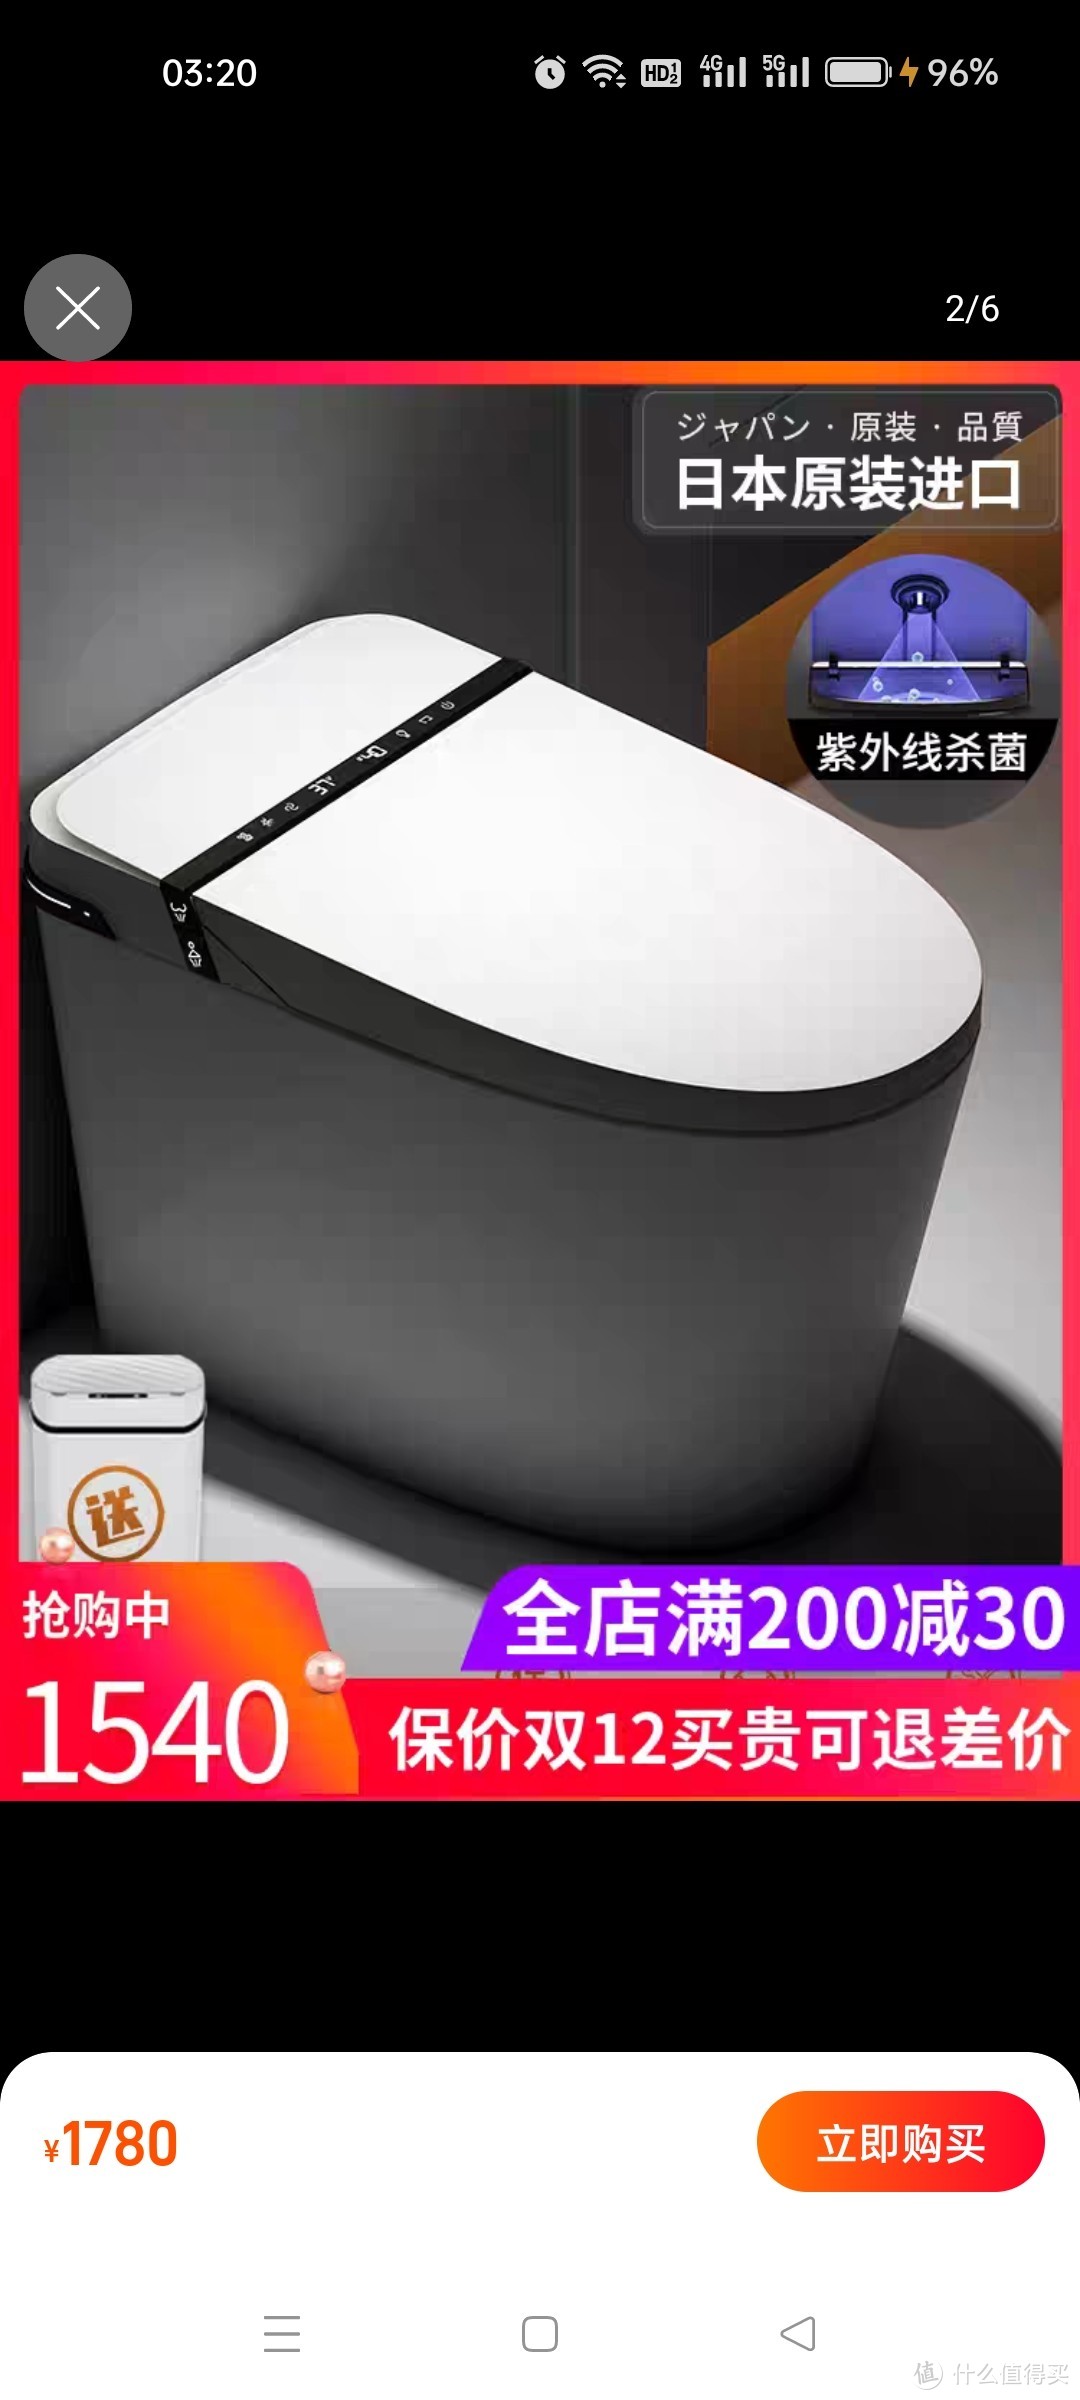 新款海外版日本进口无水压限制全自动智能马桶泡沫杀菌陶瓷坐便器